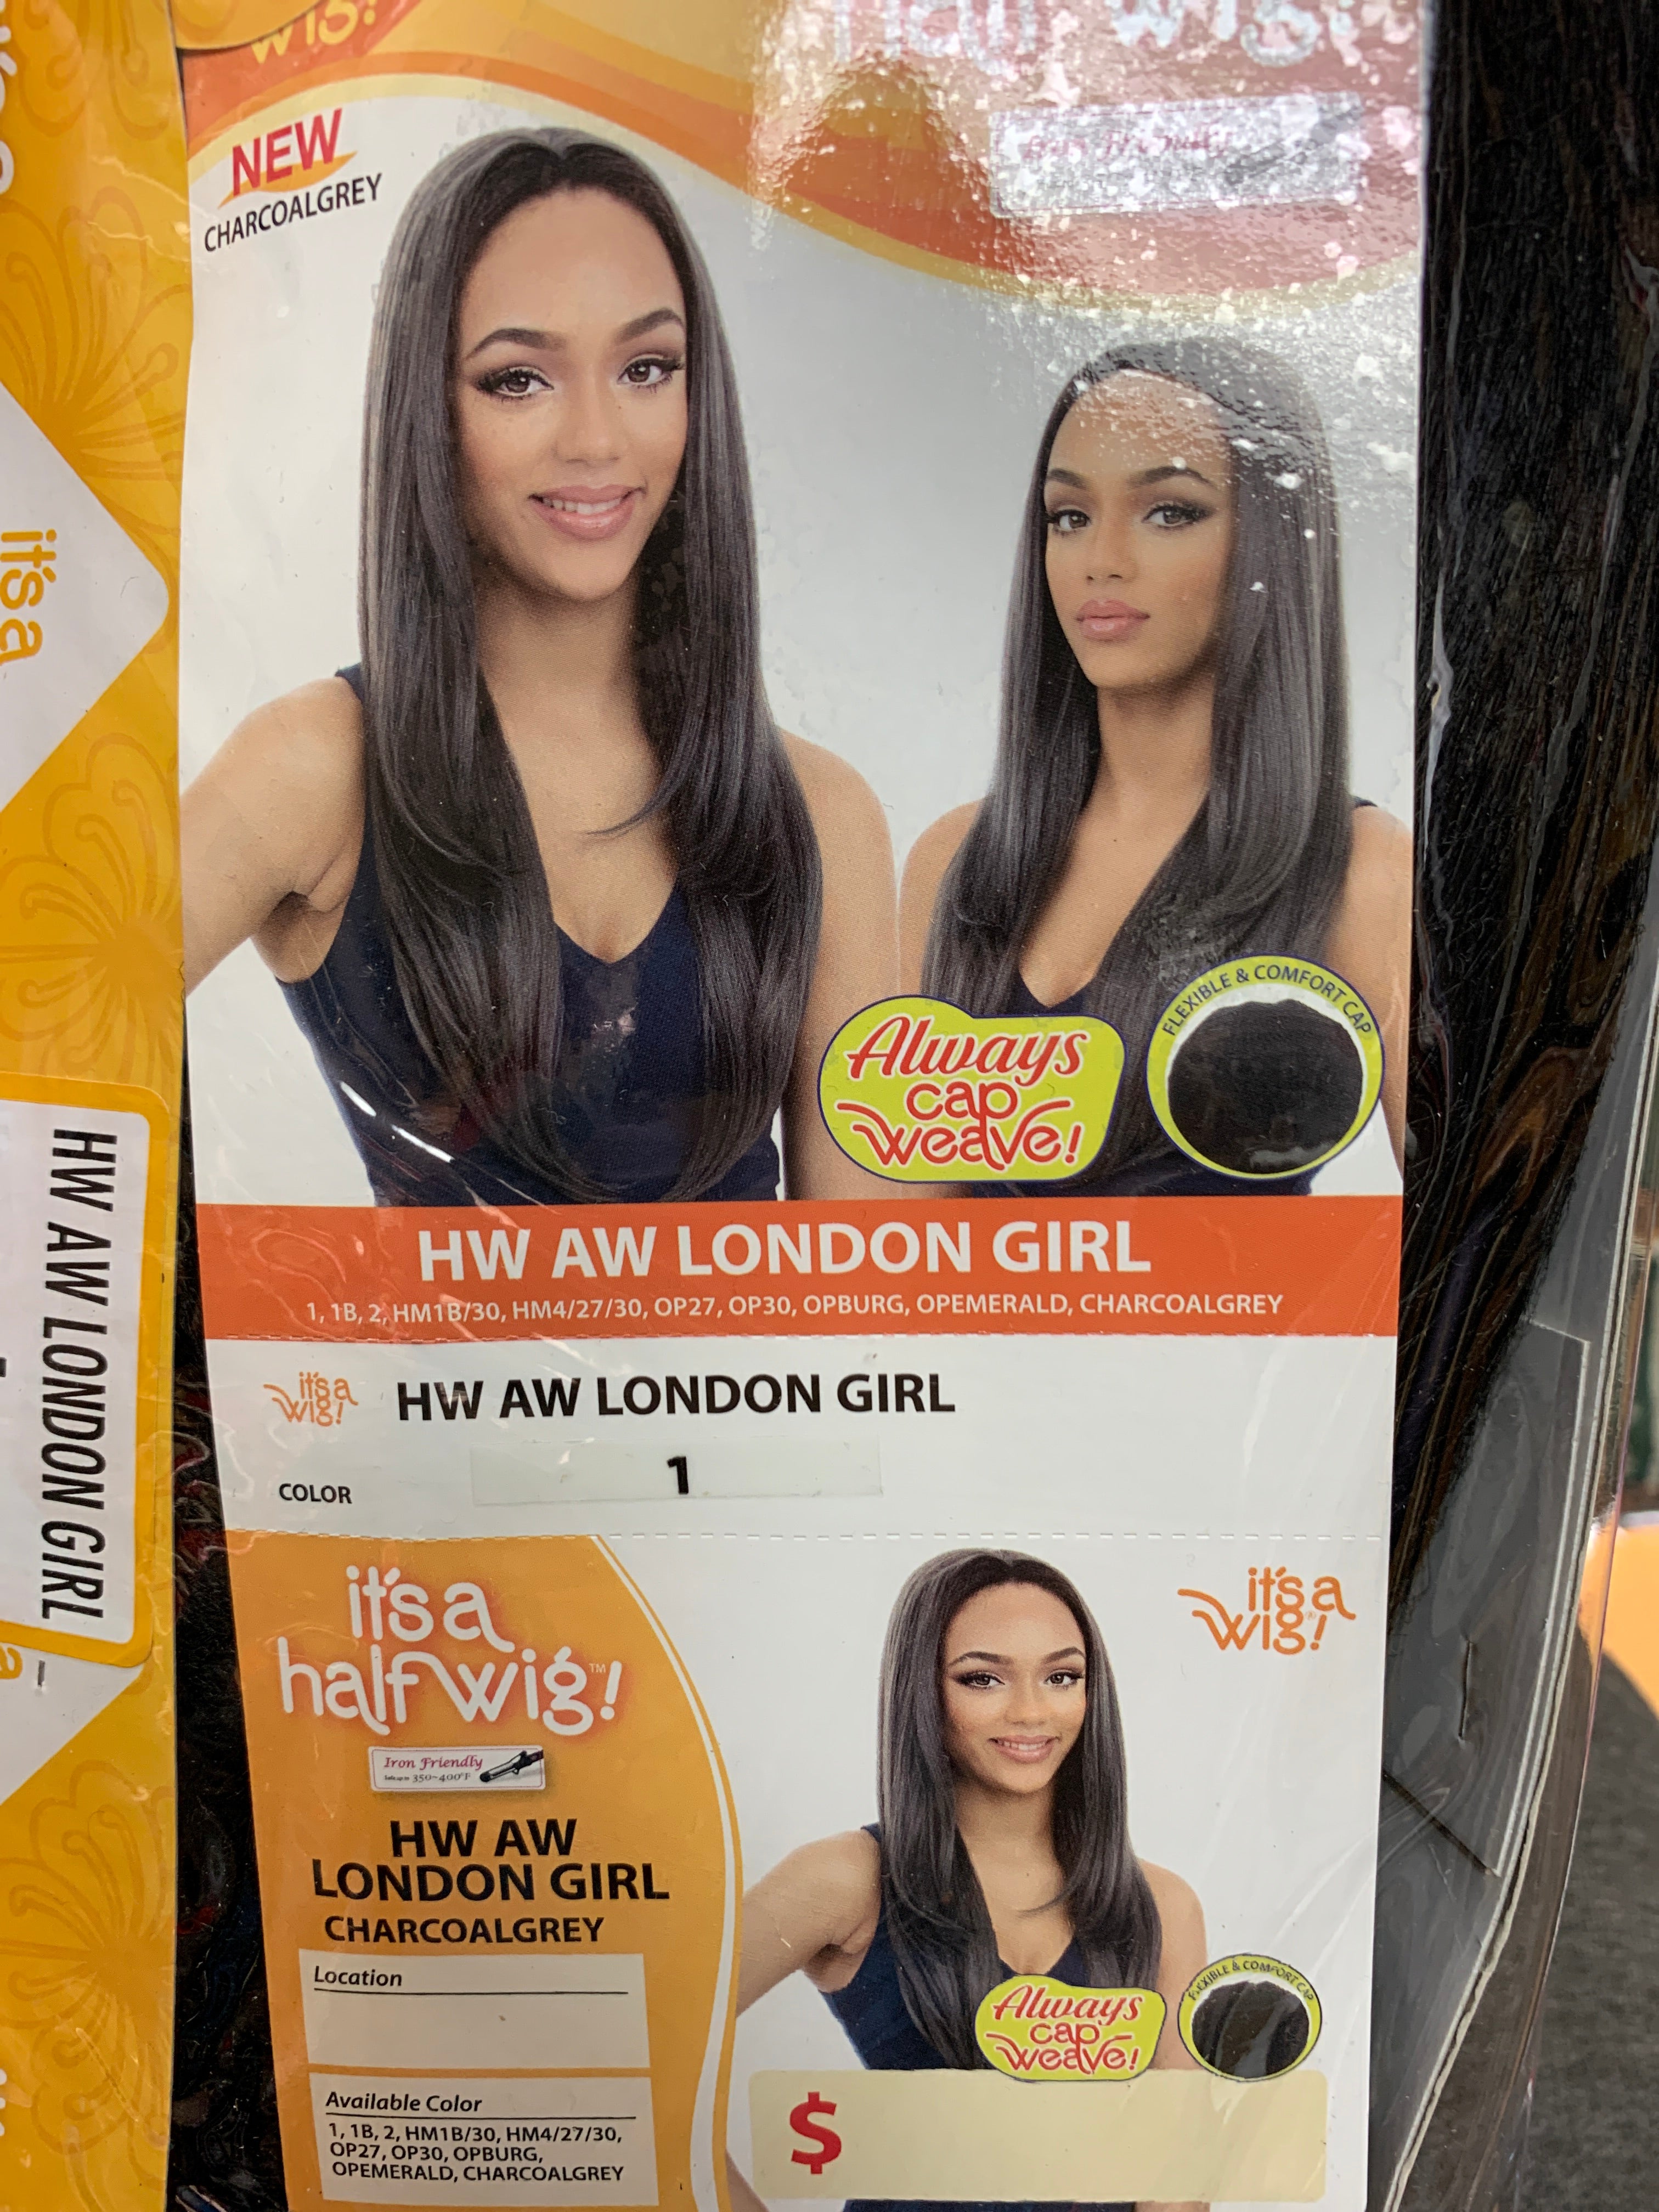 It’s a wig hw london girl